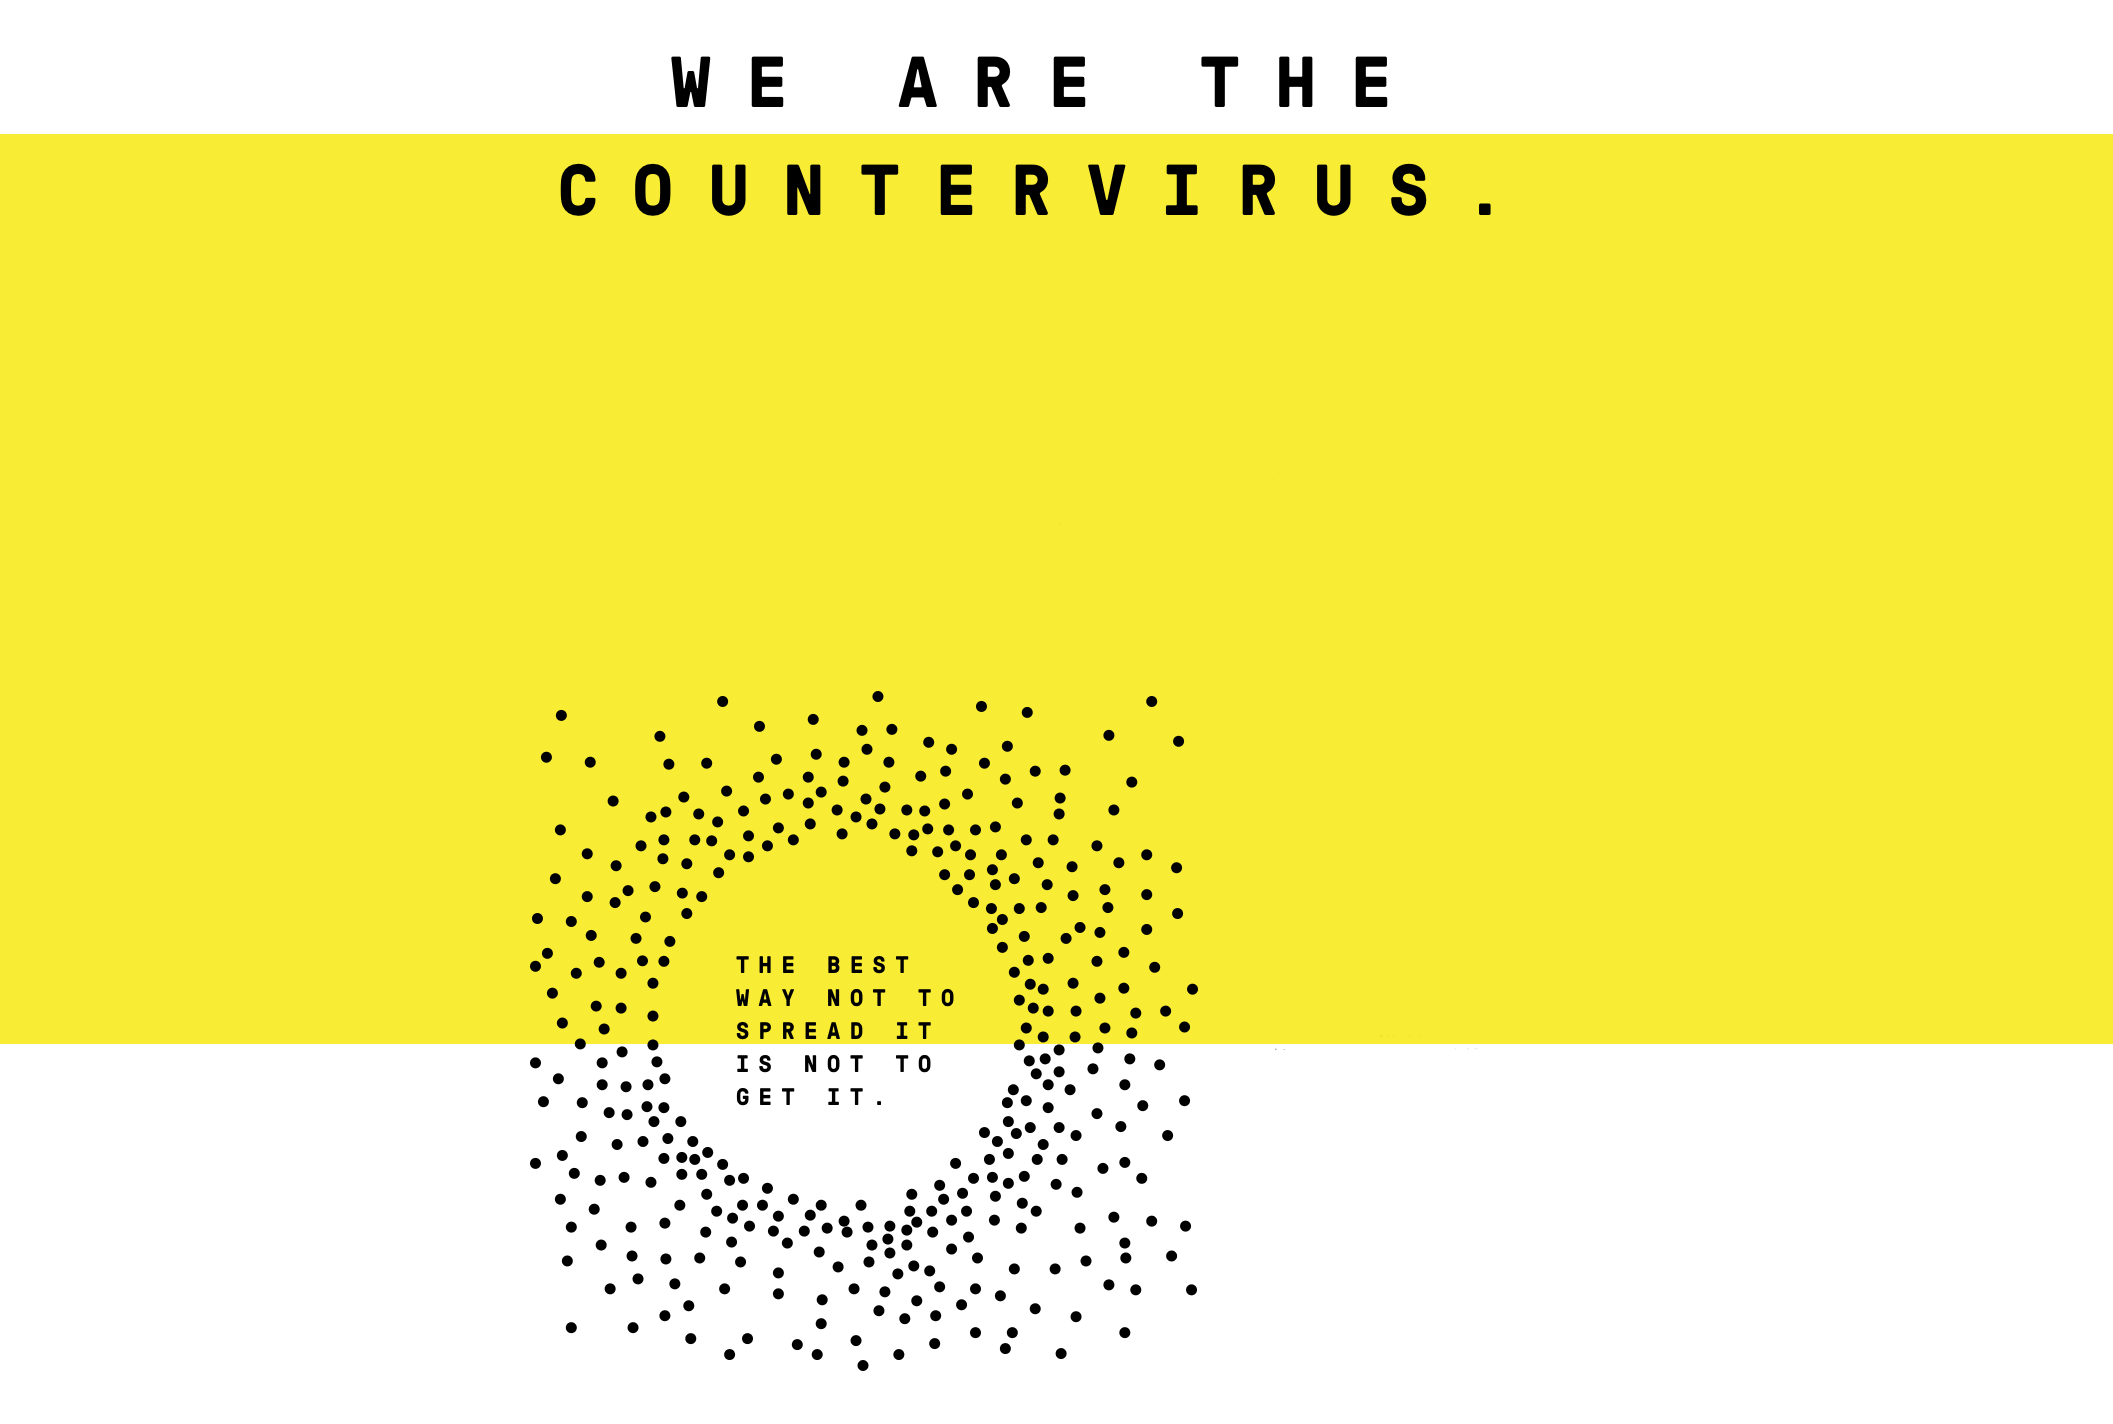 countervirus